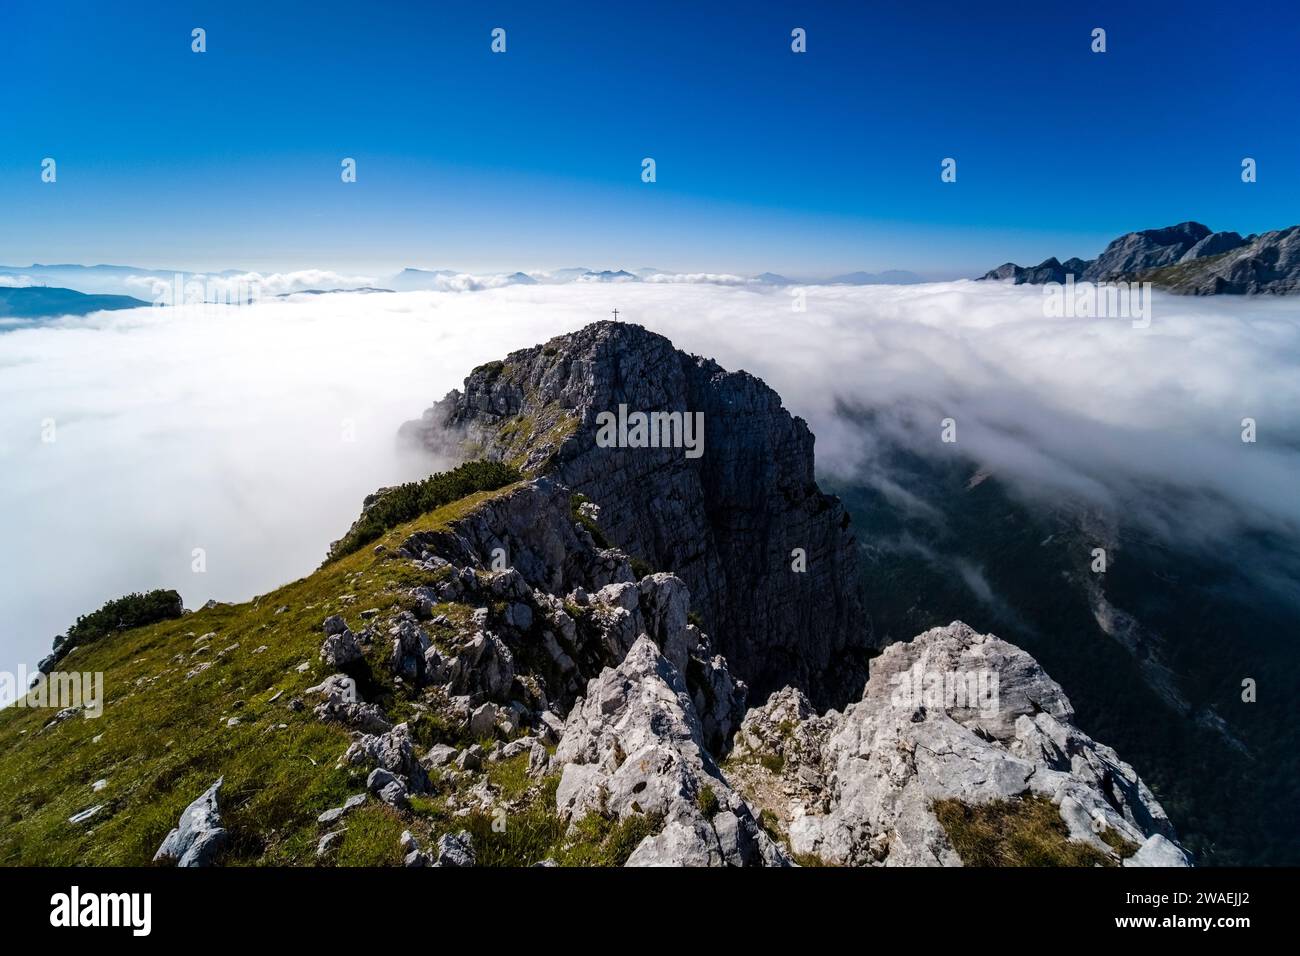 Das Tal von Molveno bedeckt mit Wolken, der Gipfel des Croz dell'Altissimo ragt aus den Wolken hervor, vom Gipfel der Cima Sophia aus gesehen. Stockfoto